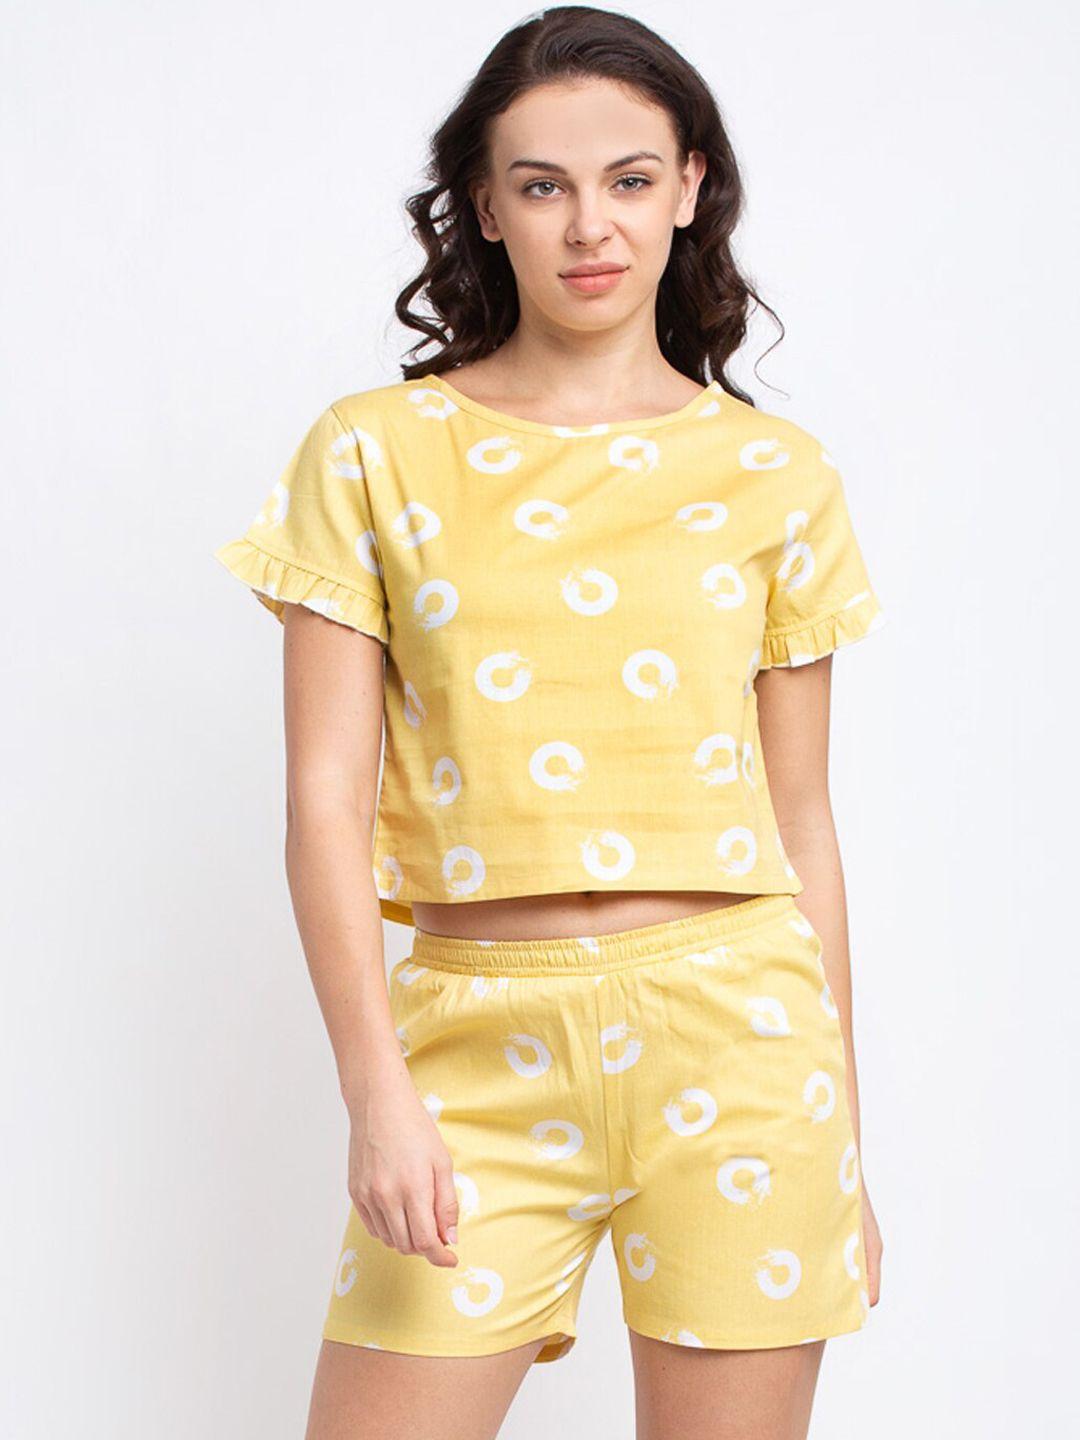 claura-women-yellow-cotton-shorts-and-top-loungewear-set